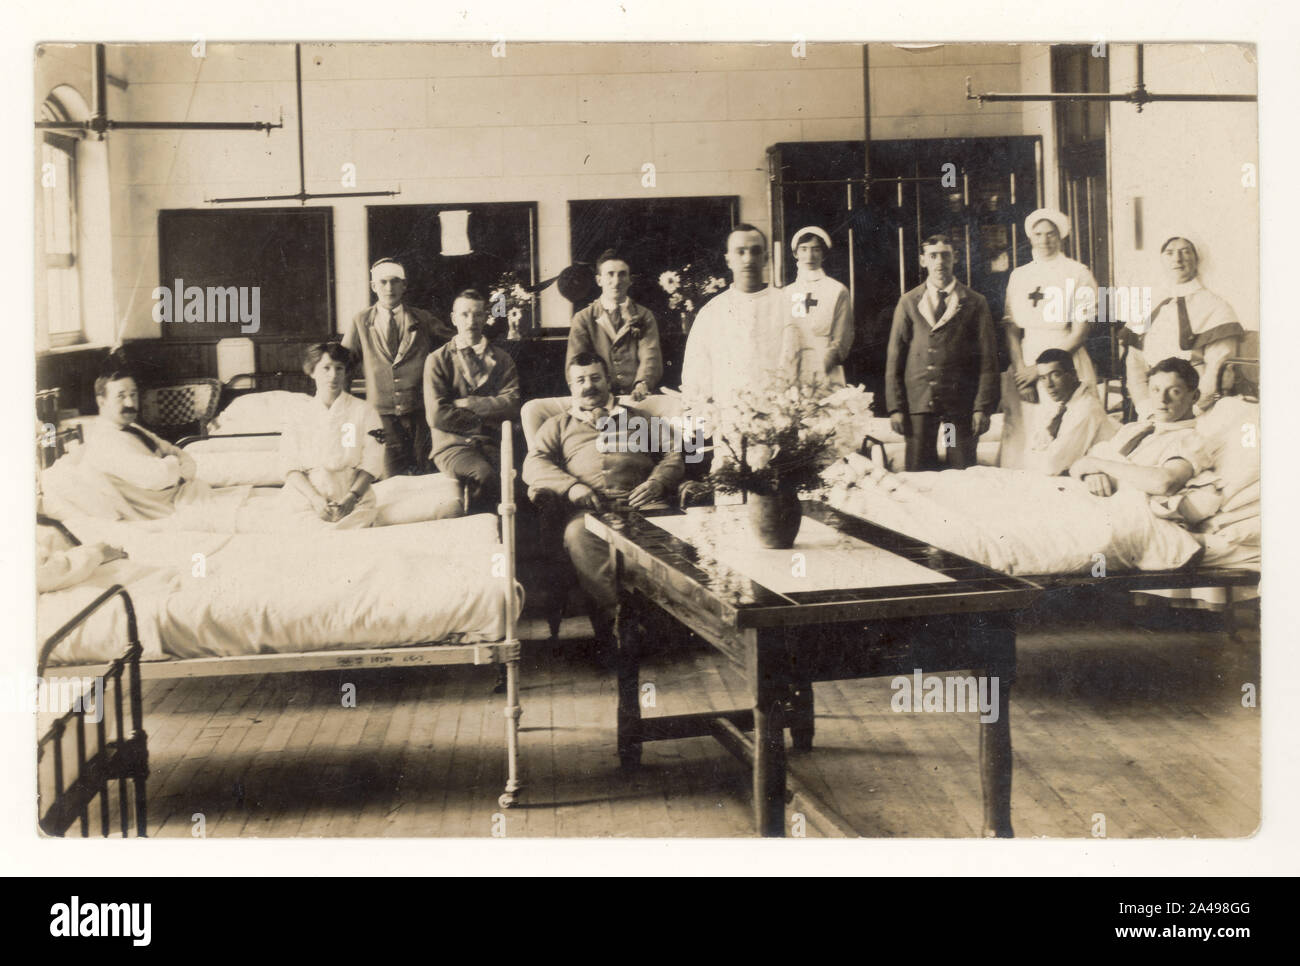 WW1 Ära Krankenstation mit Wiederherstellung der Britischen Armee Soldaten, möglicherweise zusätzliche Krankenhaus für nicht leben Verletzungen drohen, rote Kreuz Krankenschwestern, freiwillige Hilfe Ablösung oder VAD, ca. 1915, 1916, Großbritannien Stockfoto